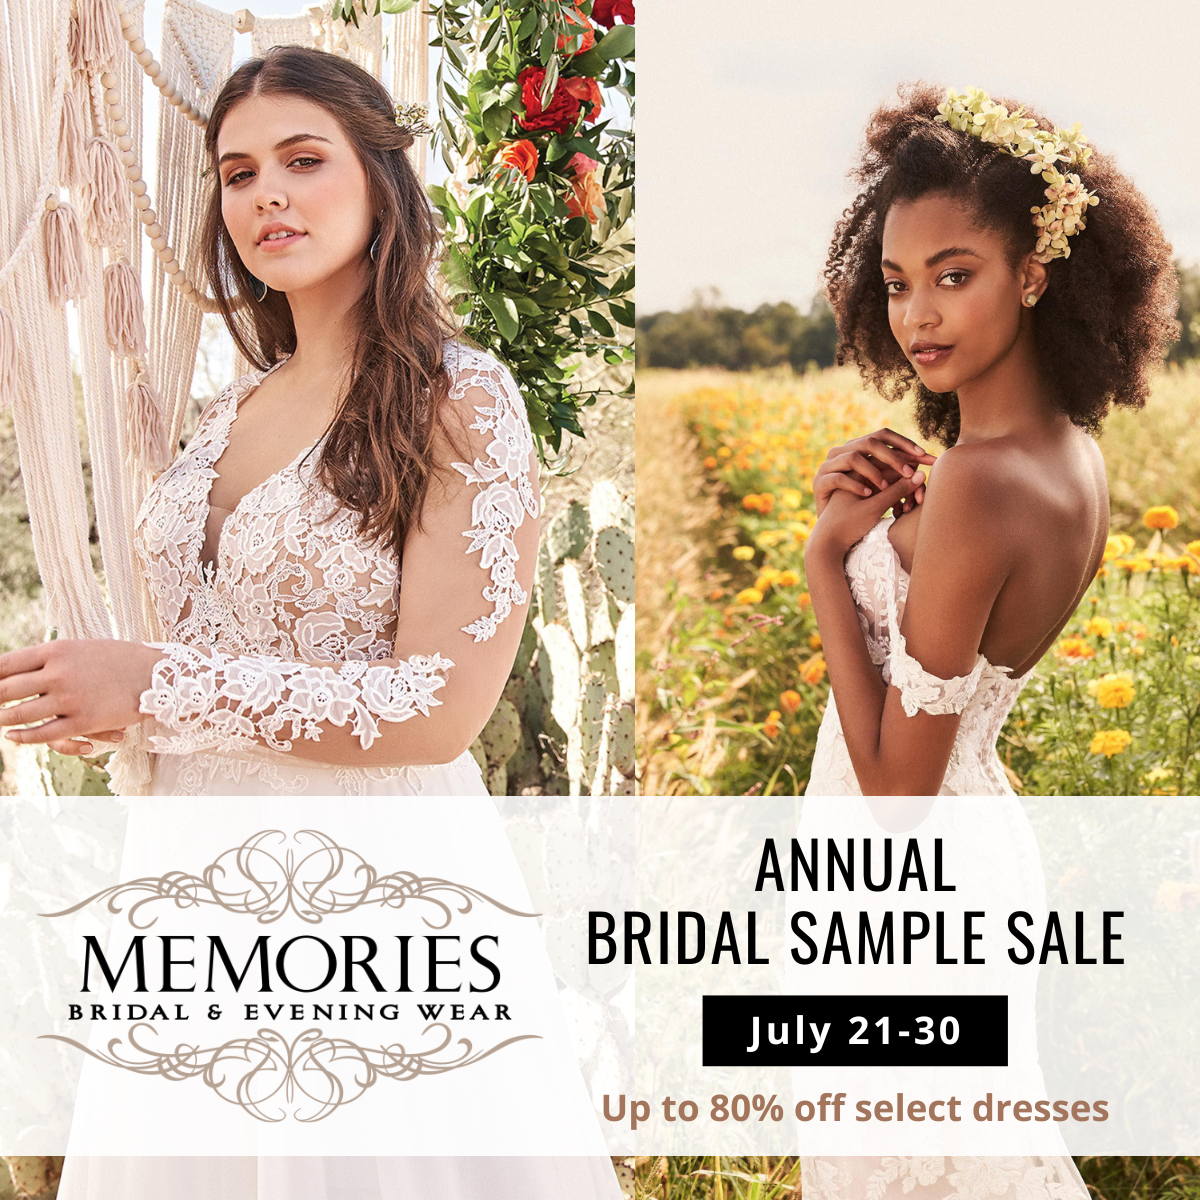 Sneak Peek: Annual Bridal Sample Sale, July 21-30